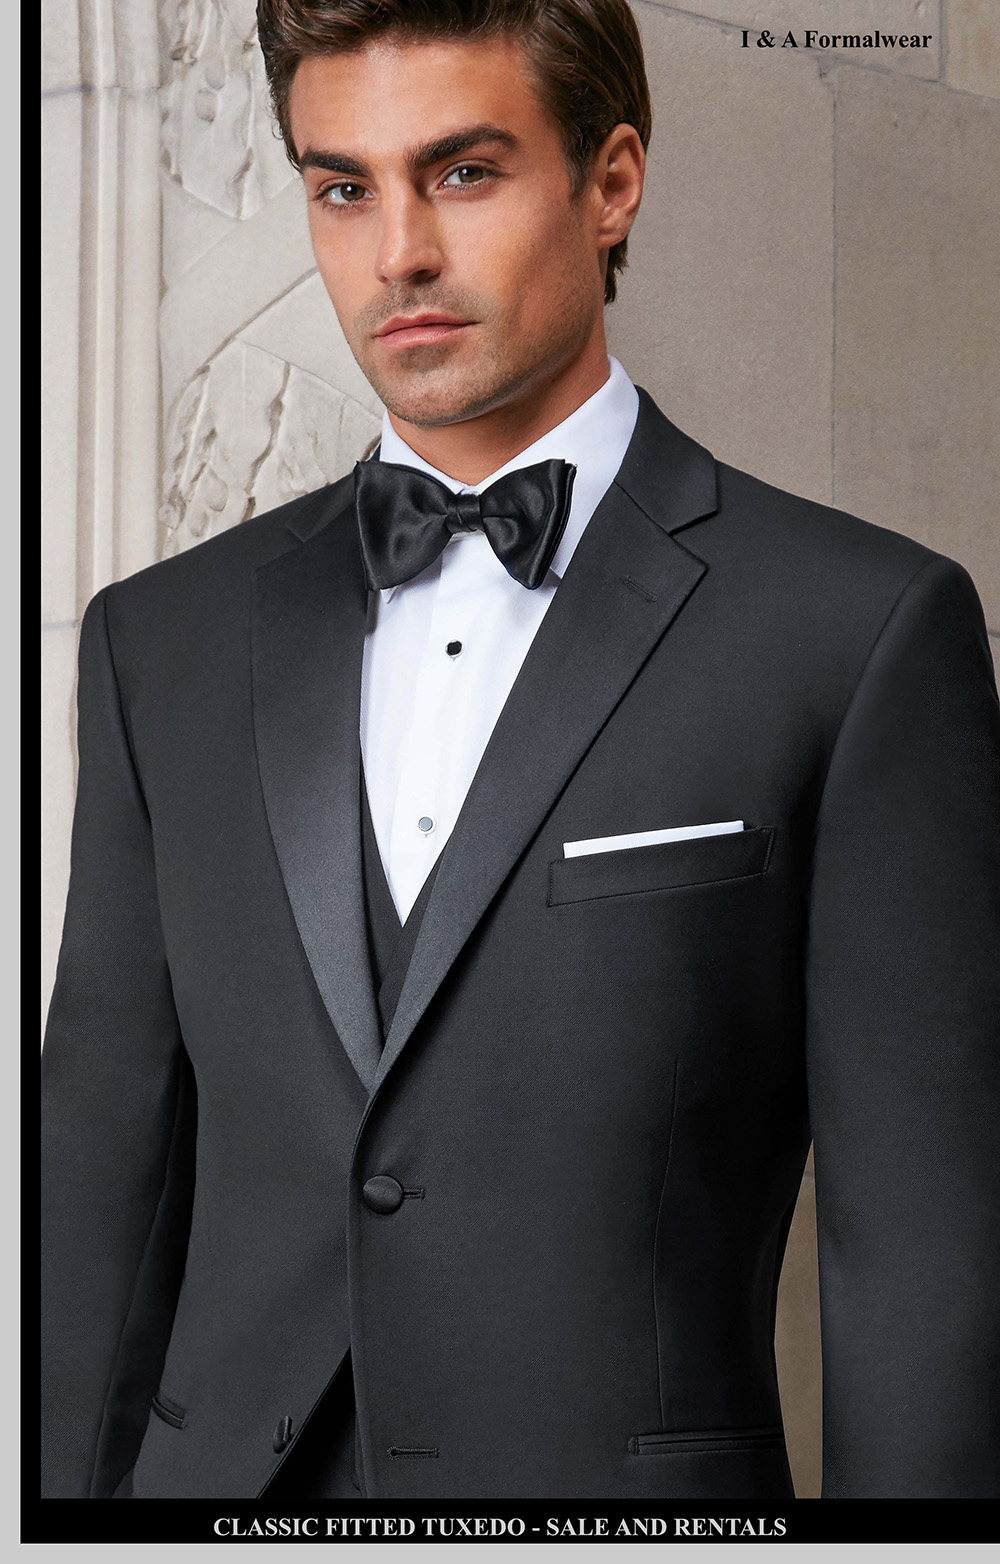 elegant Født brud Wedding Classic Tuxedo - Tuxedo Accessories